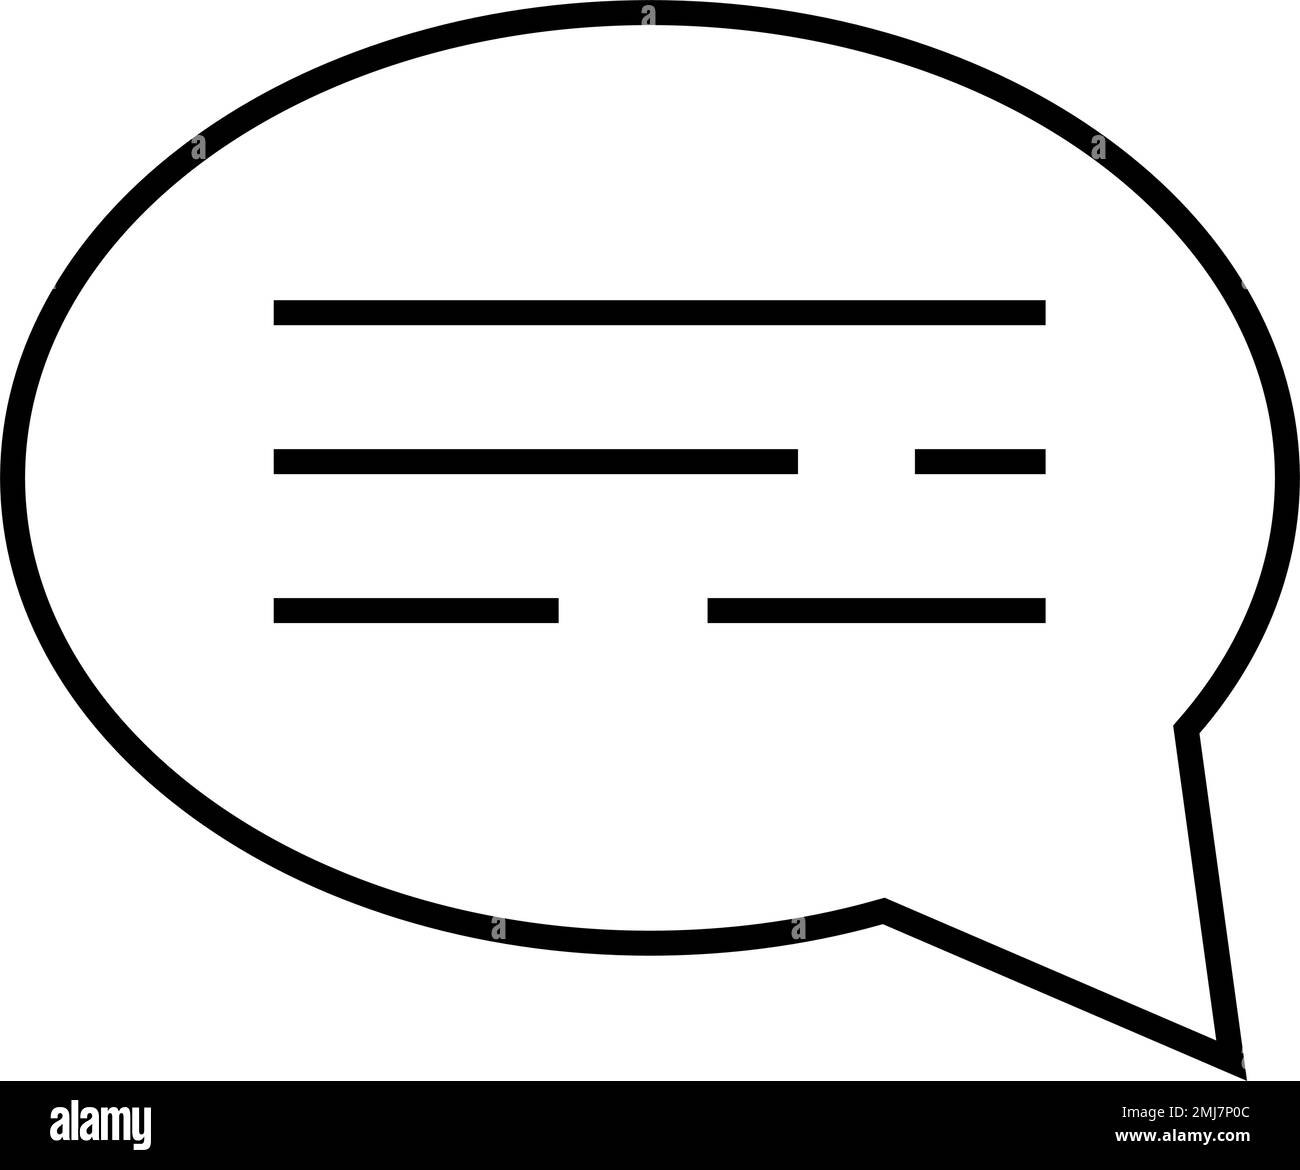 Speech bubble icon. Conversation icon. Editable vector. Stock Vector